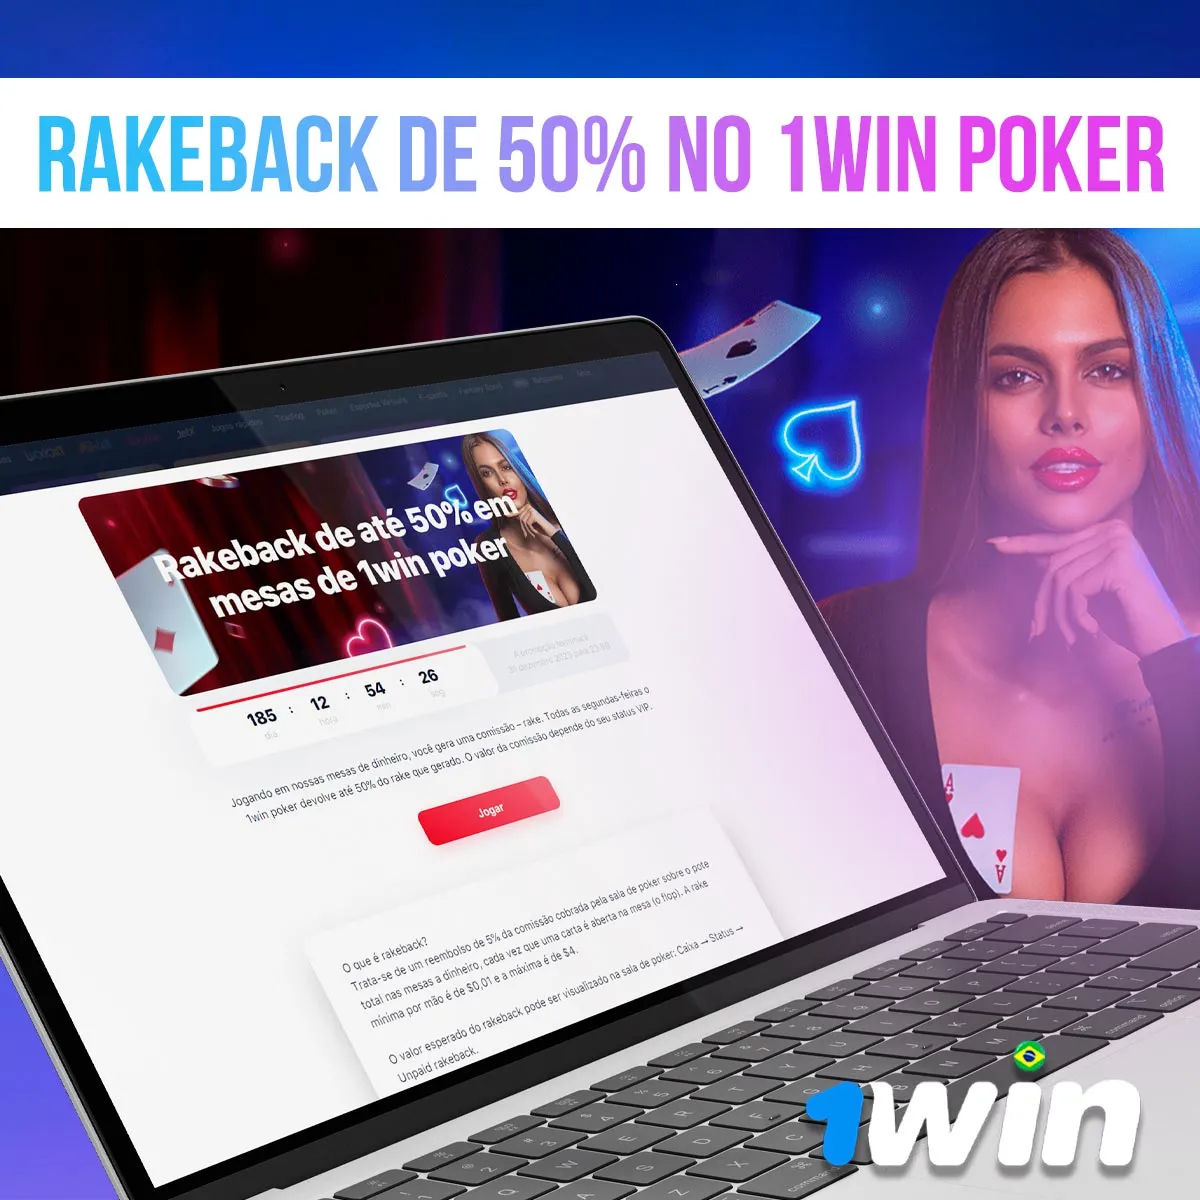 Visão geral do bônus de rakeback de 50% no 1win poker